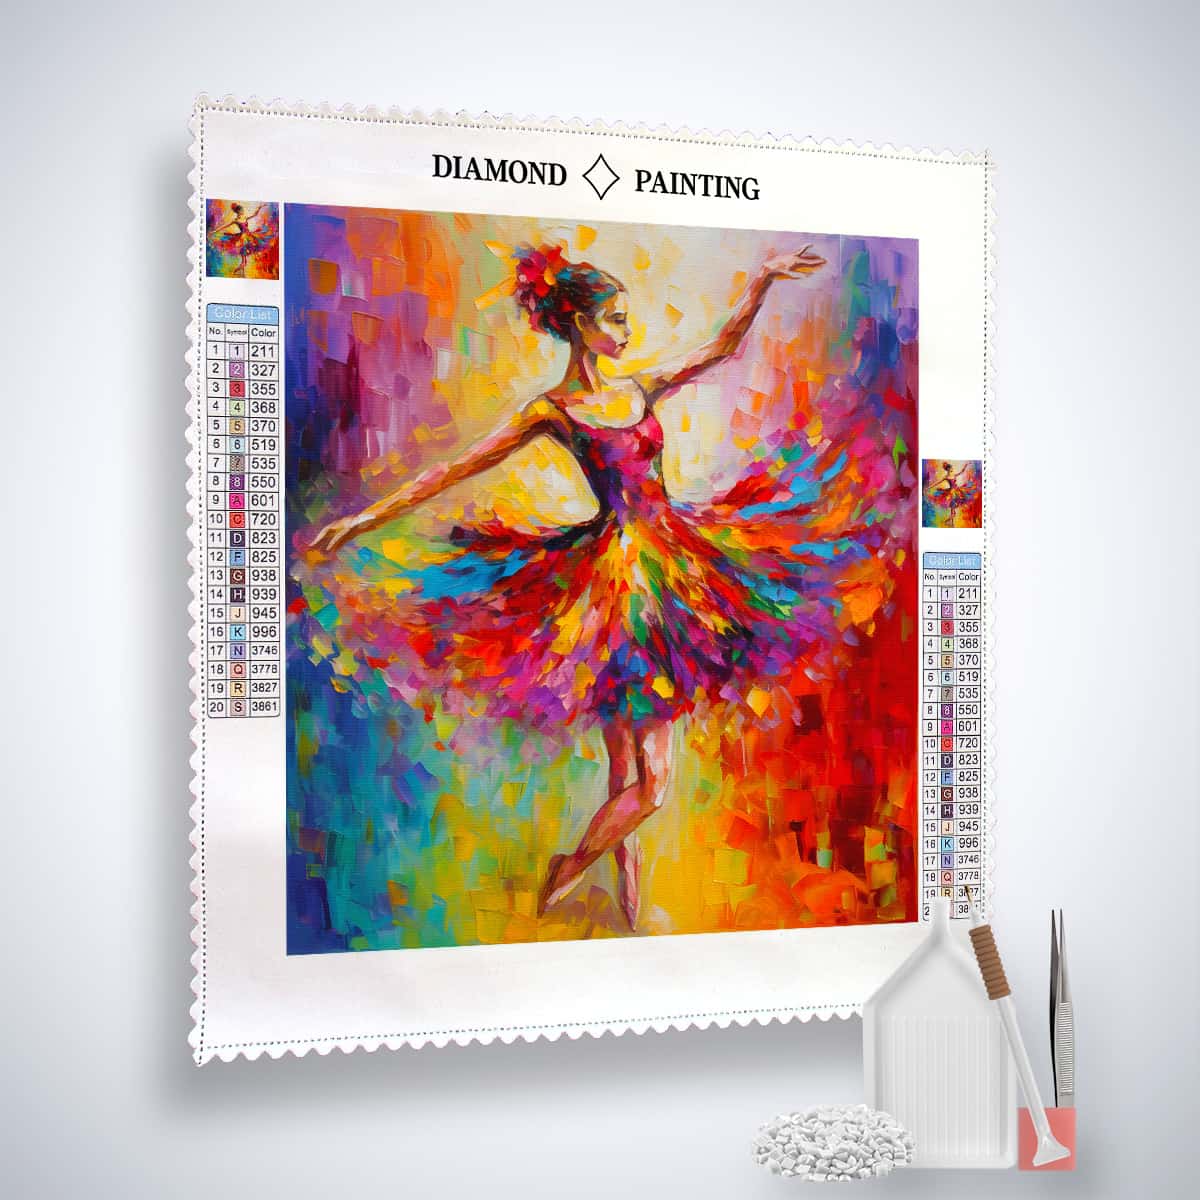 AB Diamond Painting - Farbtanz Frau - gedruckt in Ultra-HD - AB Diamond, Ballerina, Menschen, Neu eingetroffen, Quadratisch